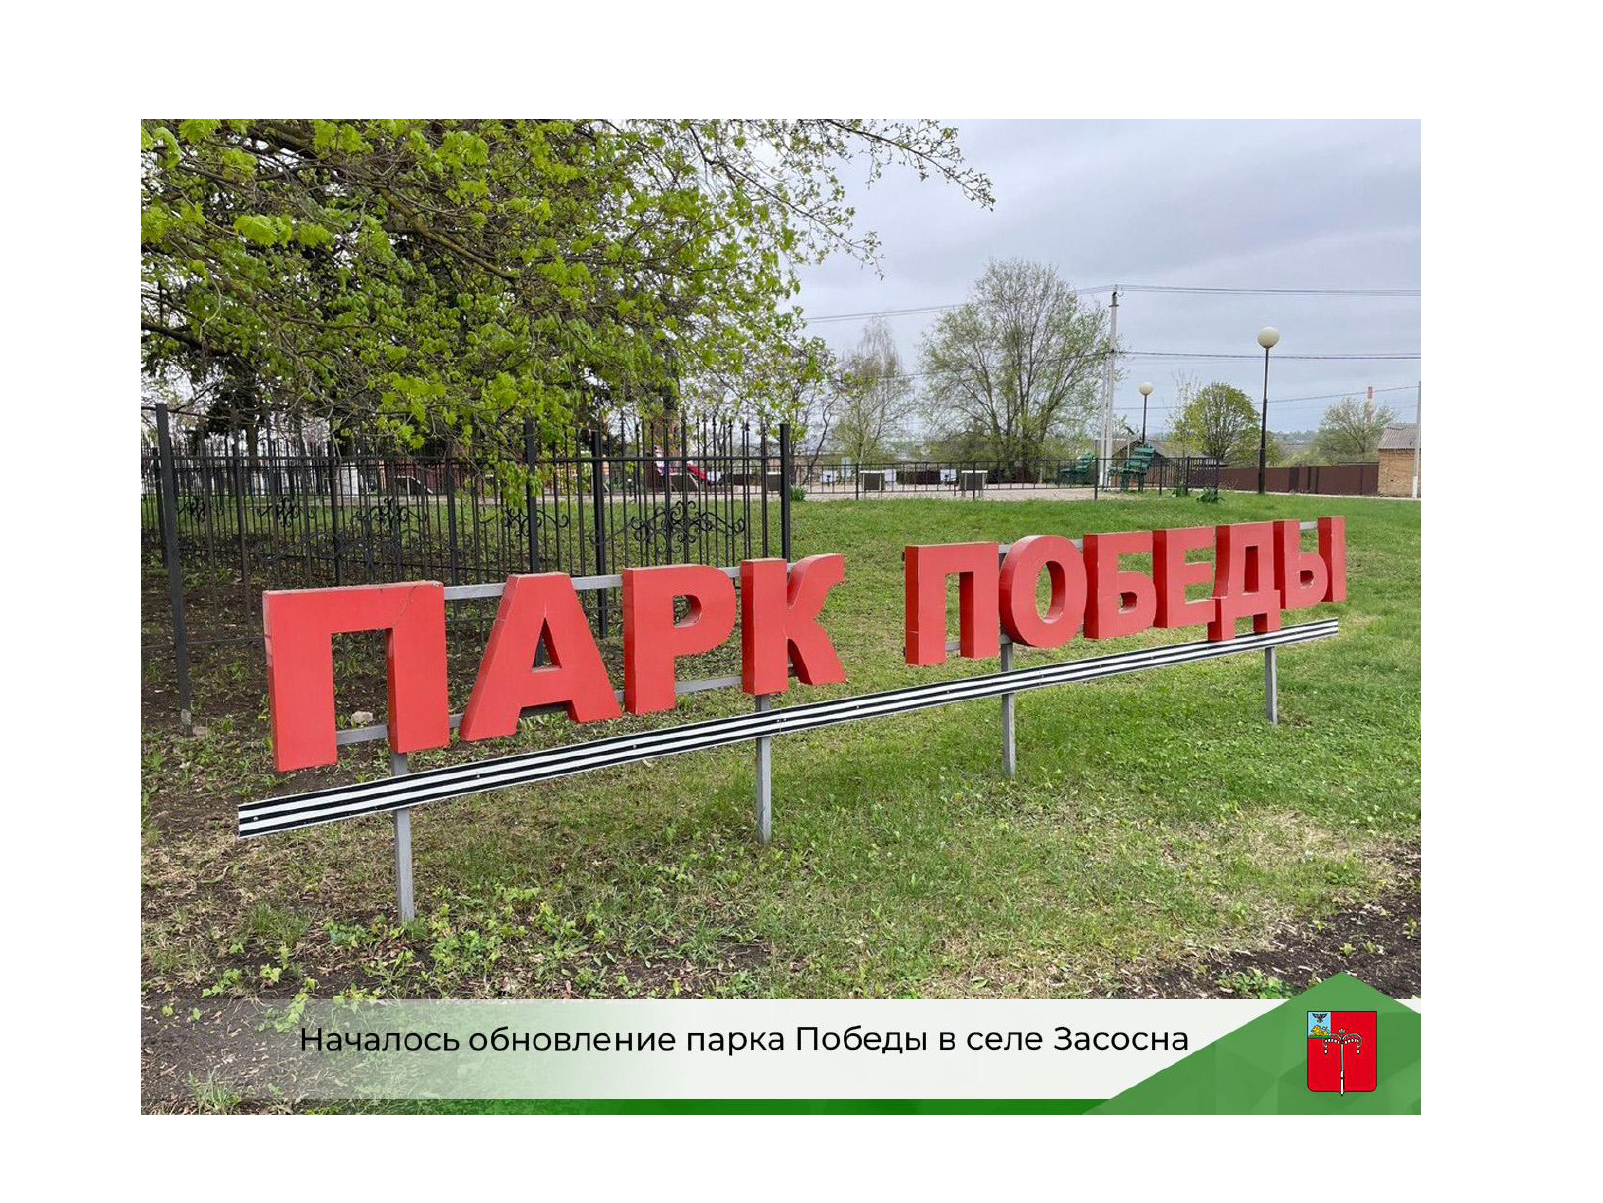 Началось обновление парка Победы в селе Засосна.